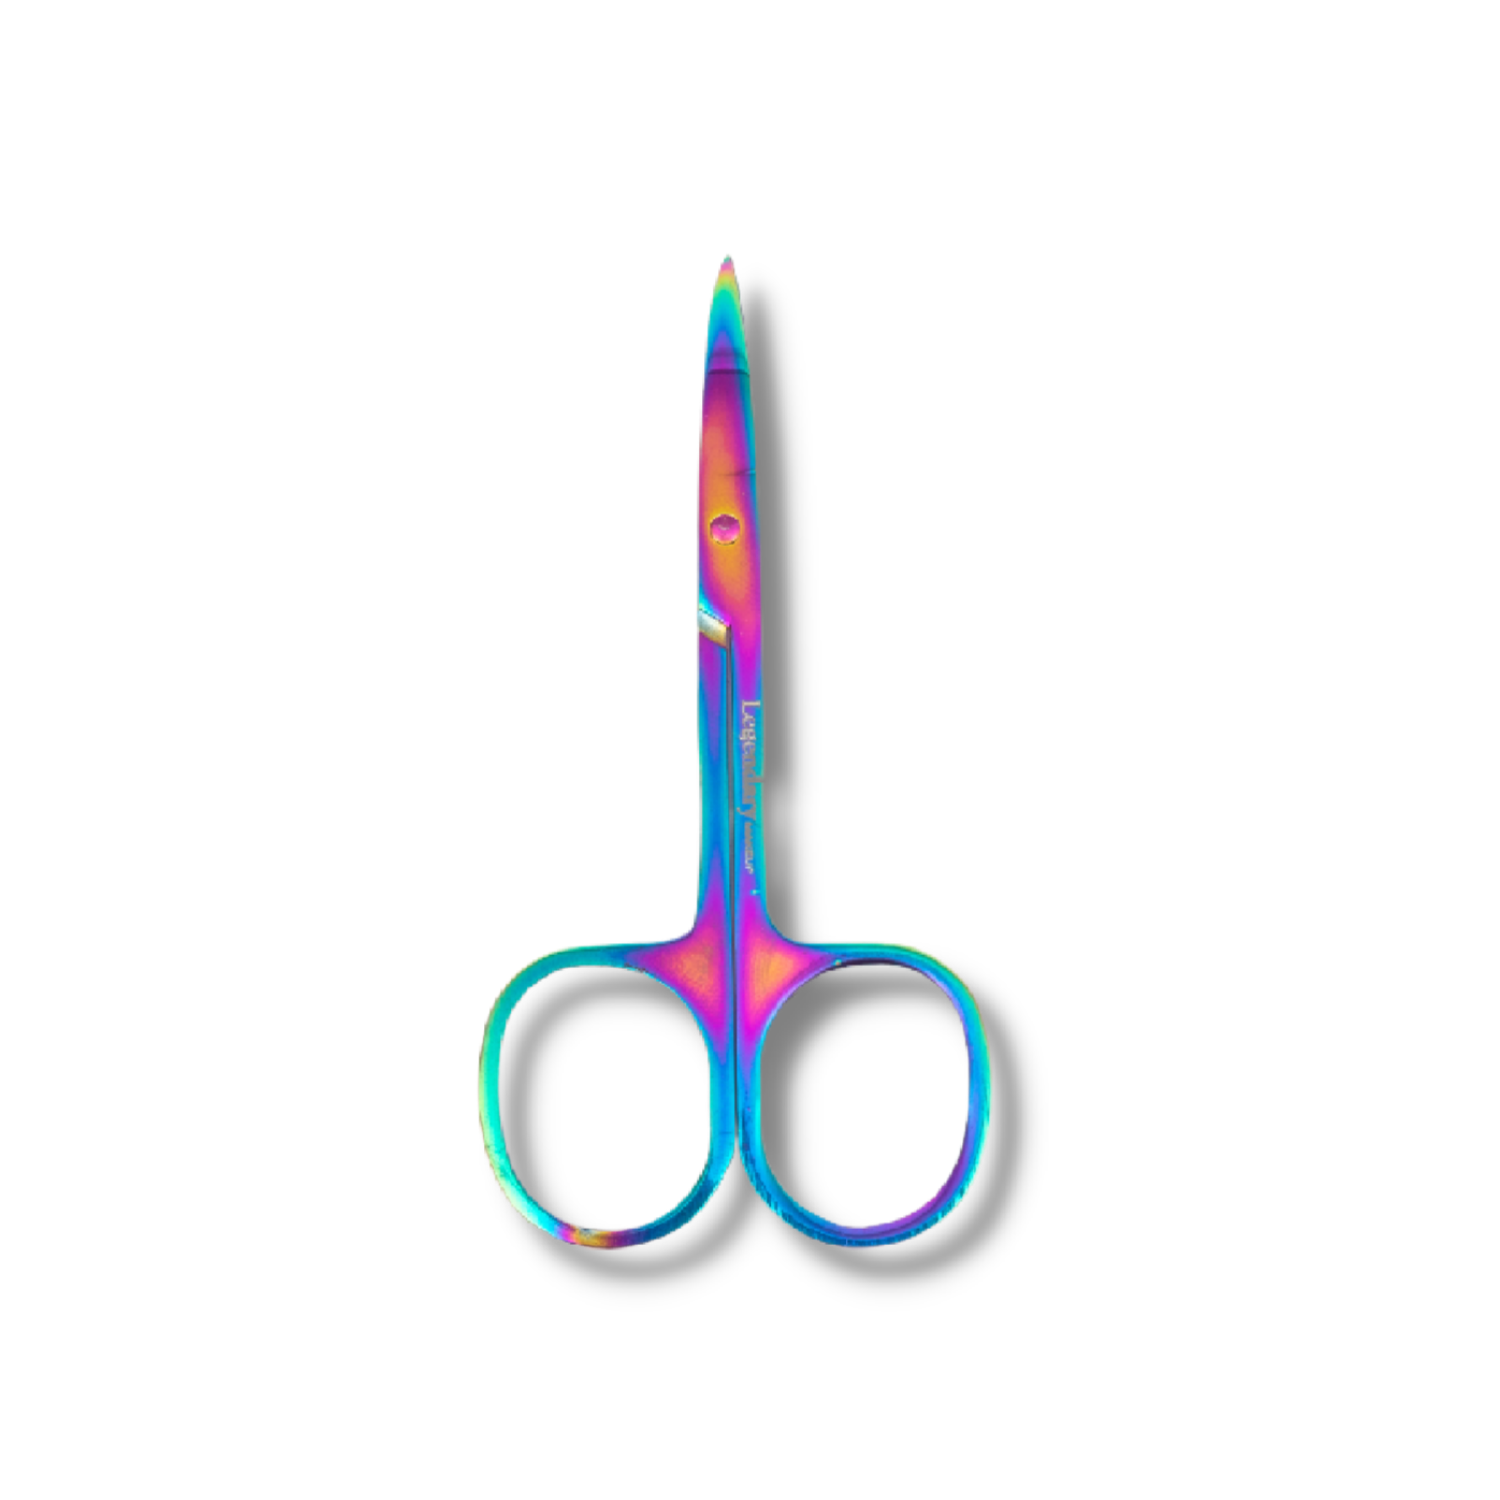 Luxe Eyelash Scissors